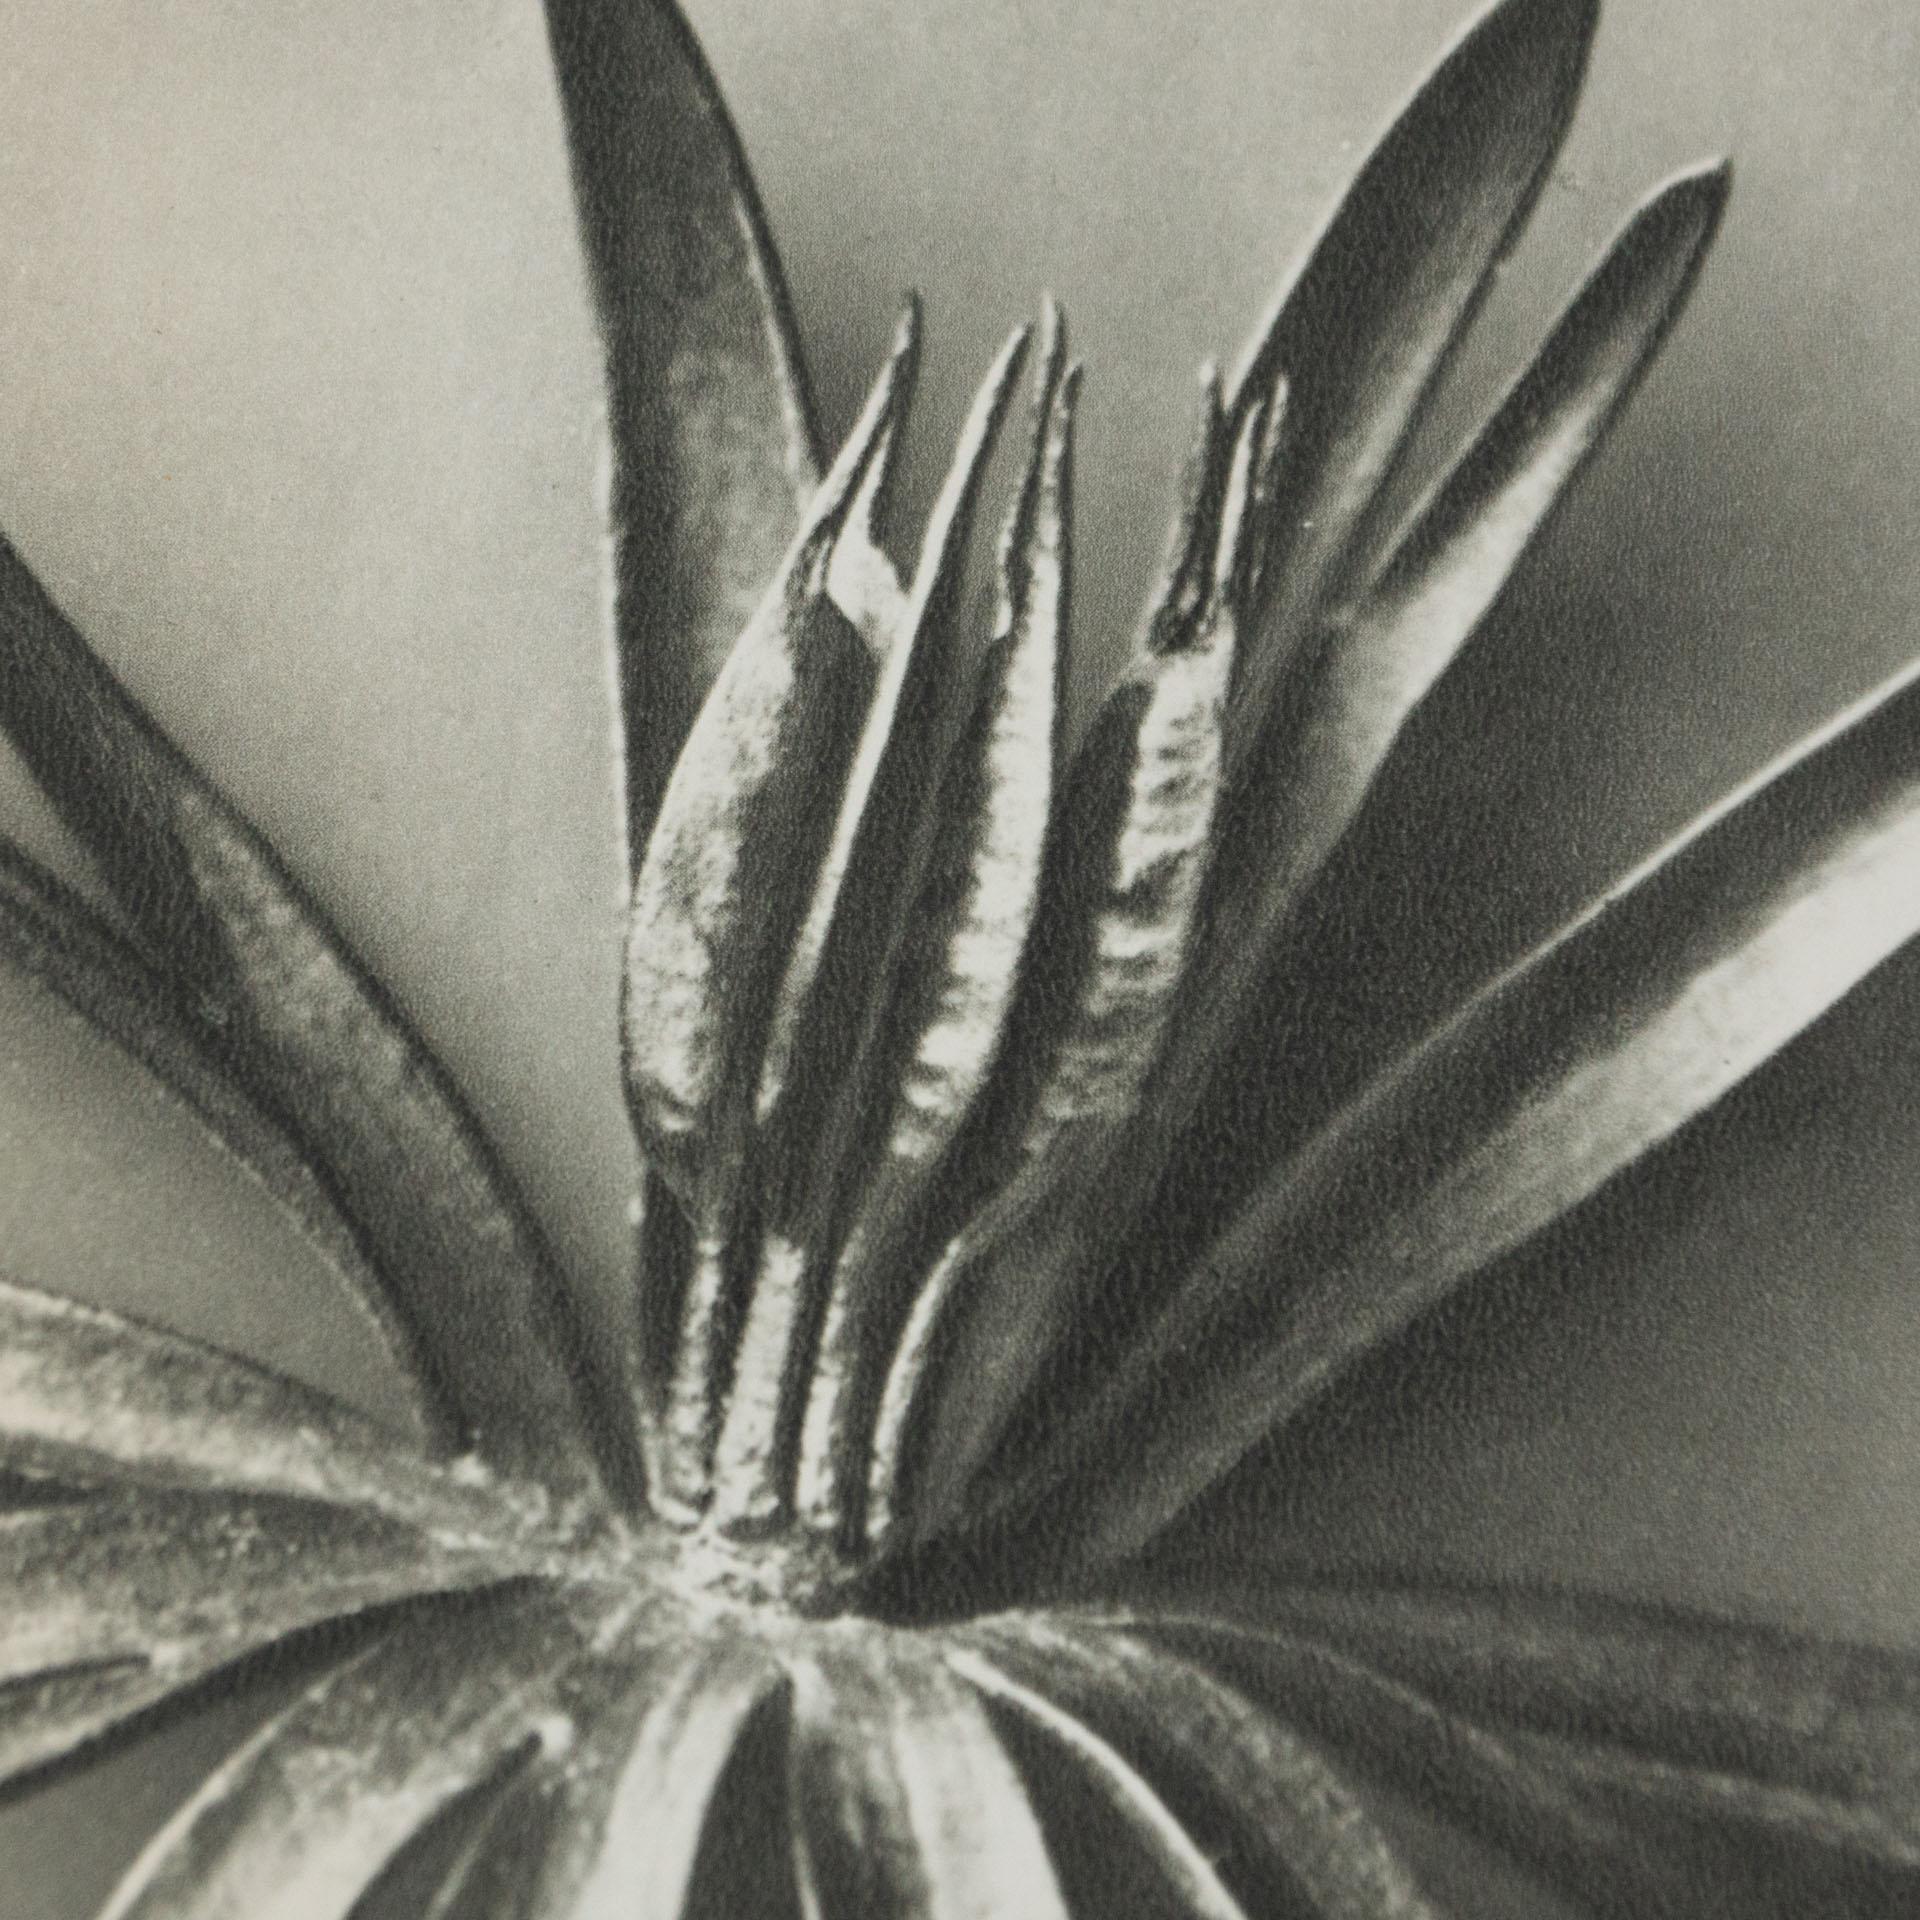 Paper Karl Blossfeldt Black White Flower Photogravure Botanic Photography, 1942